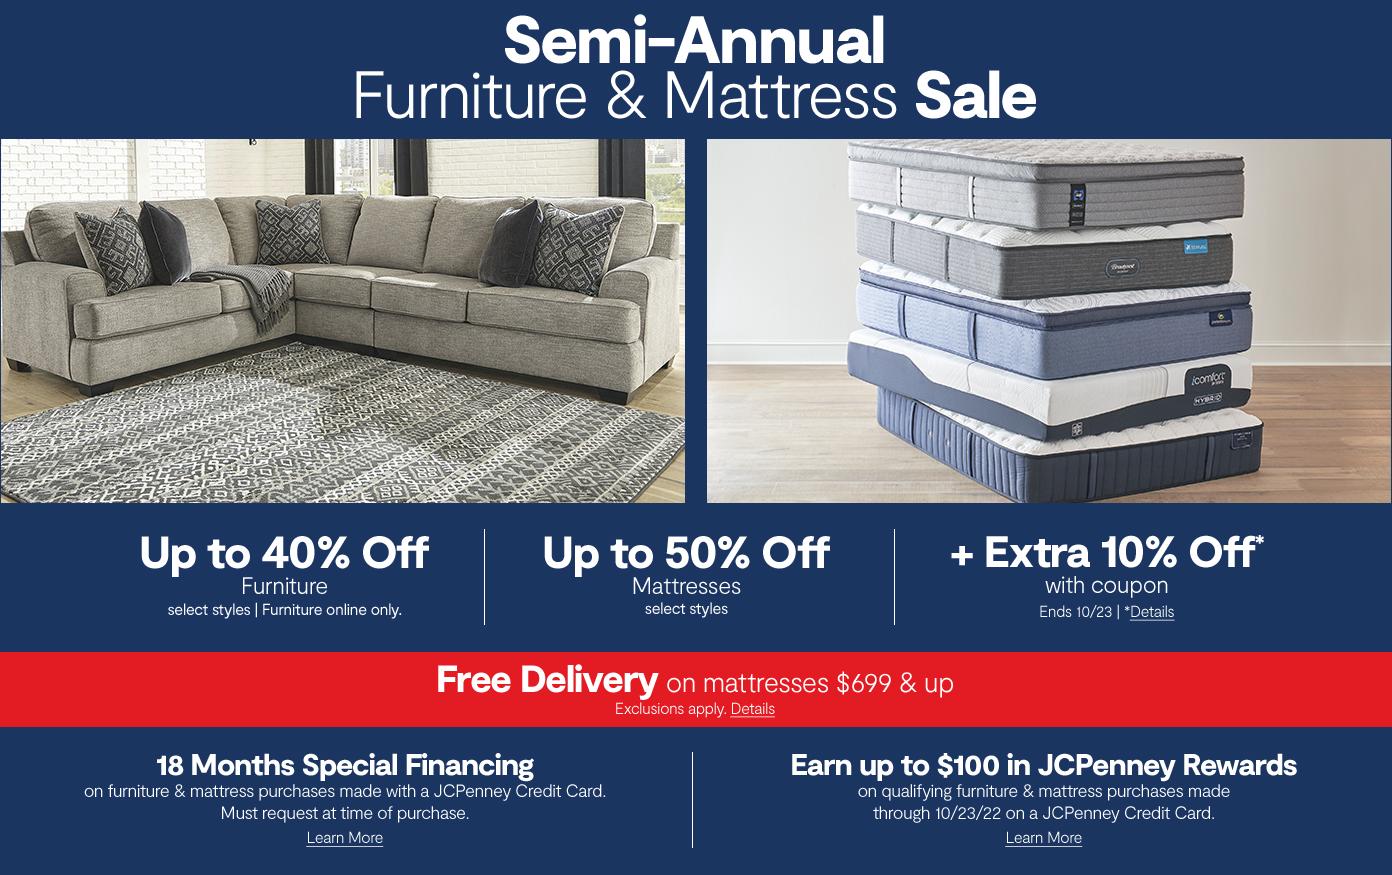 Semi Annual Furniture & Mattress Sale. up to 40% off furniture up to 50% off mattresses free delivery